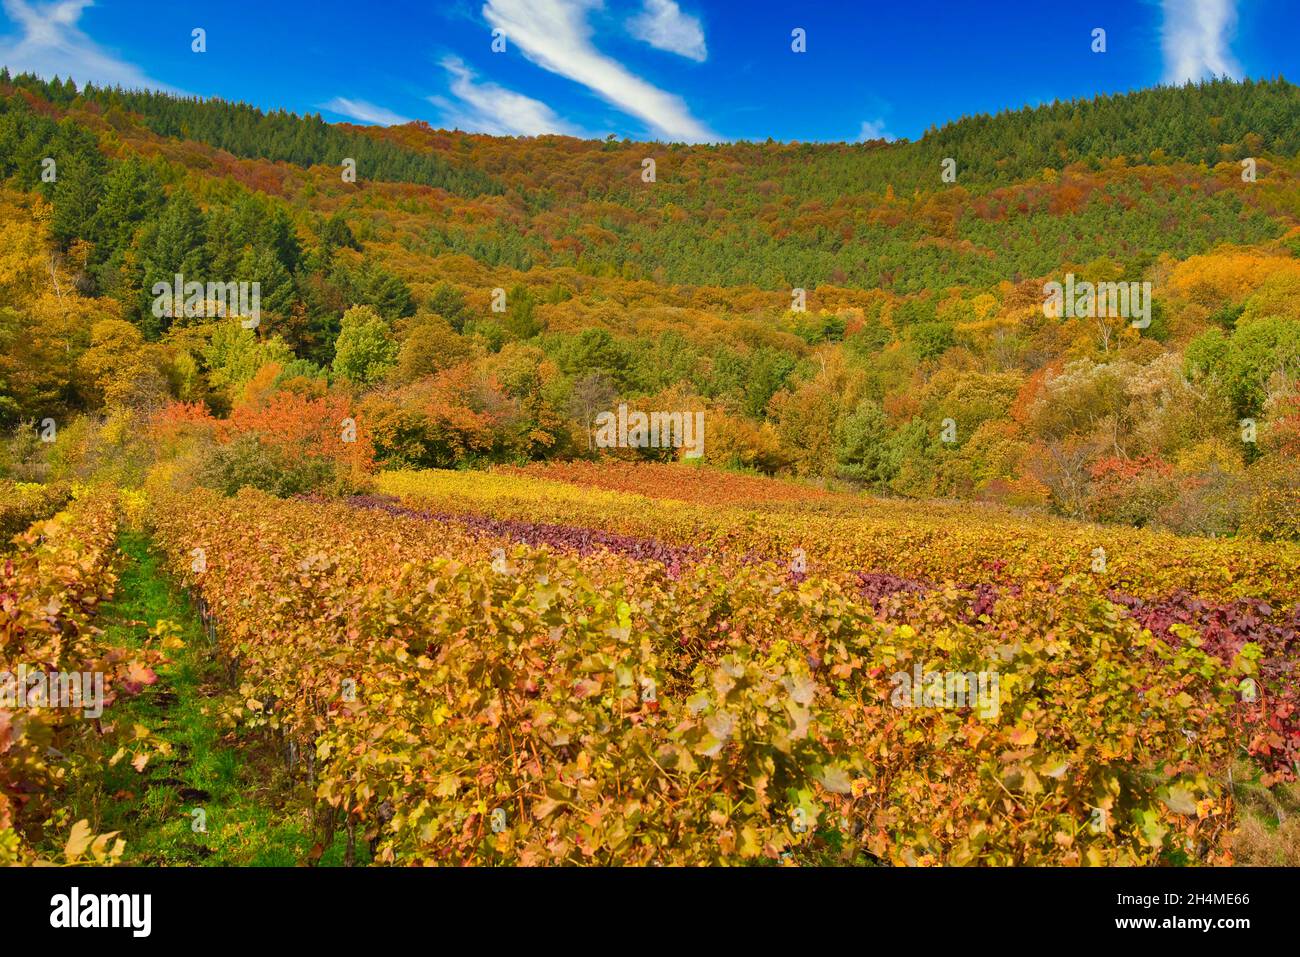 Sunny colorful vineyards landscape in autumn. Rhineland-Palatinate, Germany. Vineyard Rural autumn landscape Stock Photo